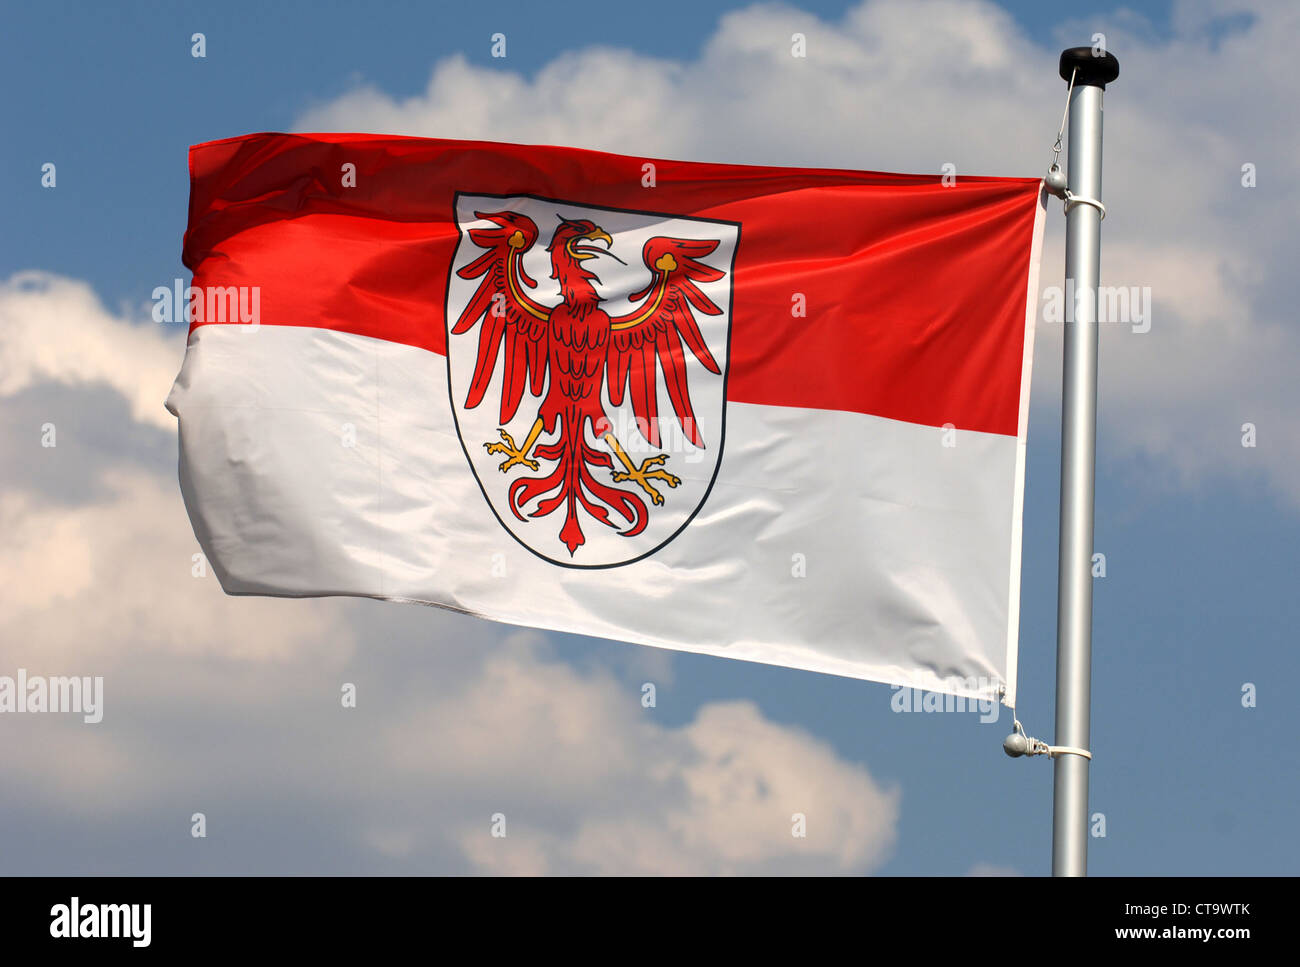 https://c8.alamy.com/comp/CT9WTK/brandenburg-flag-on-a-flagpole-ferch-CT9WTK.jpg